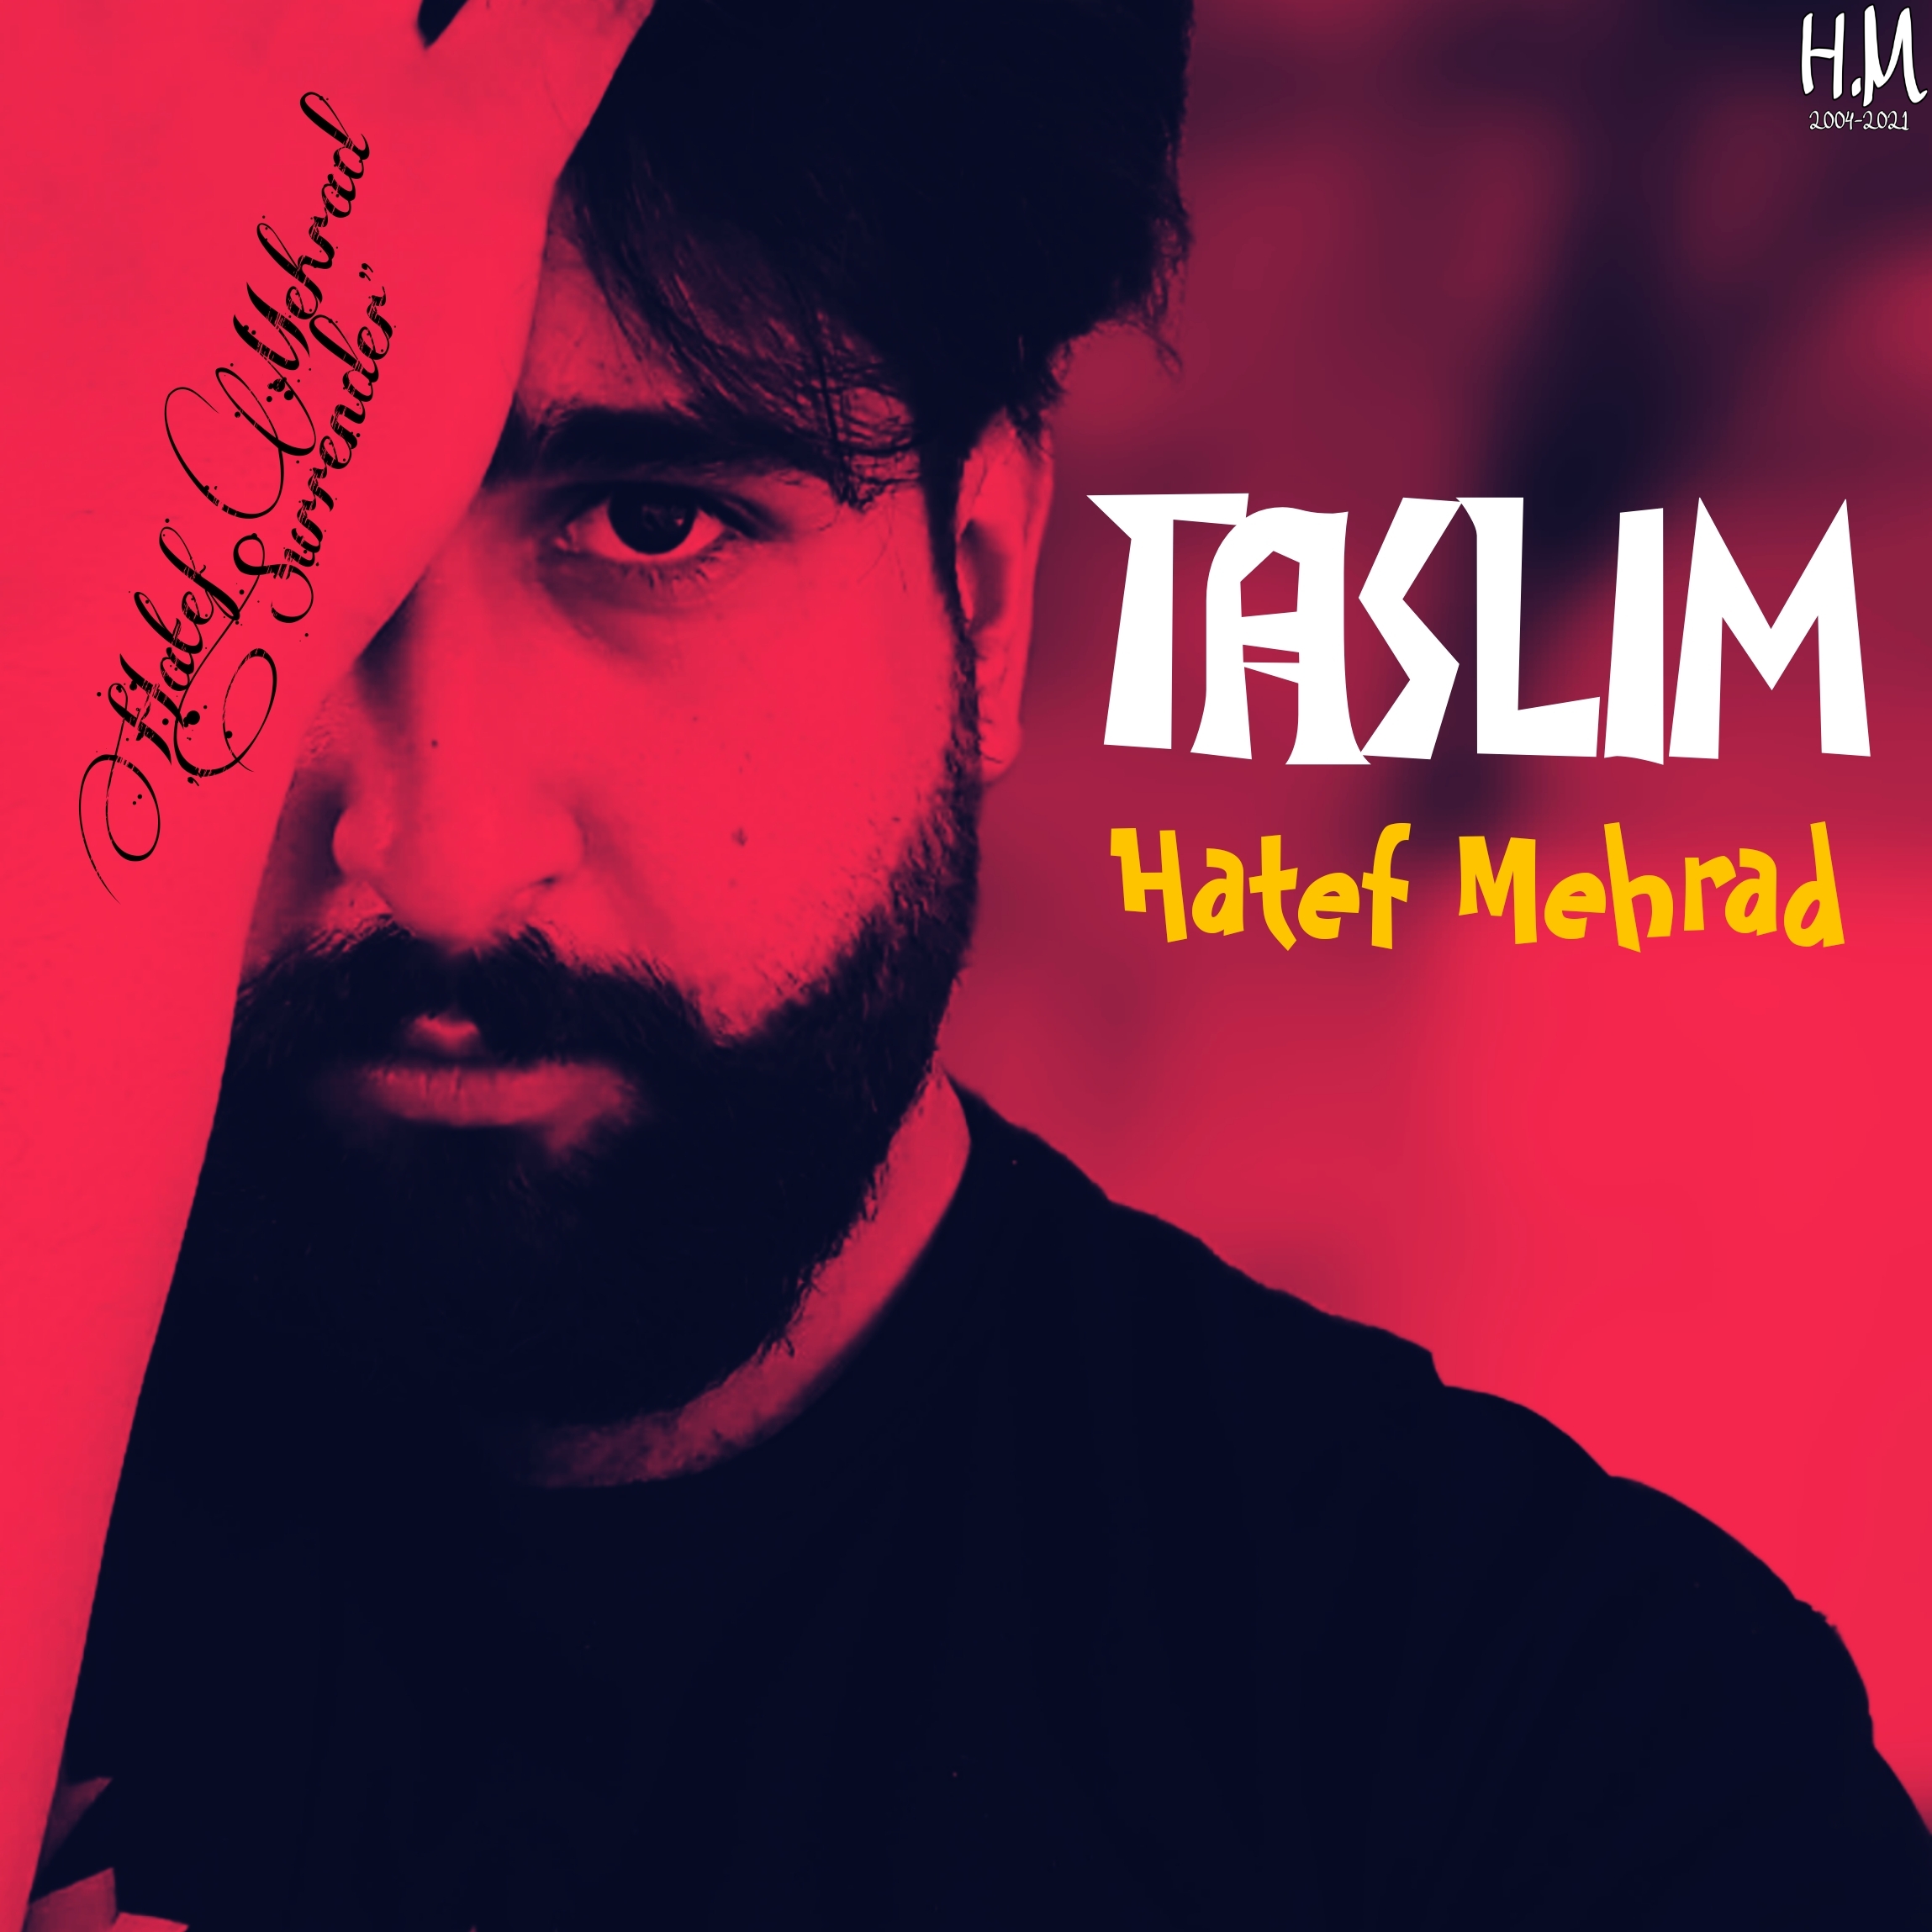 Hatef Mehrad – Taslim